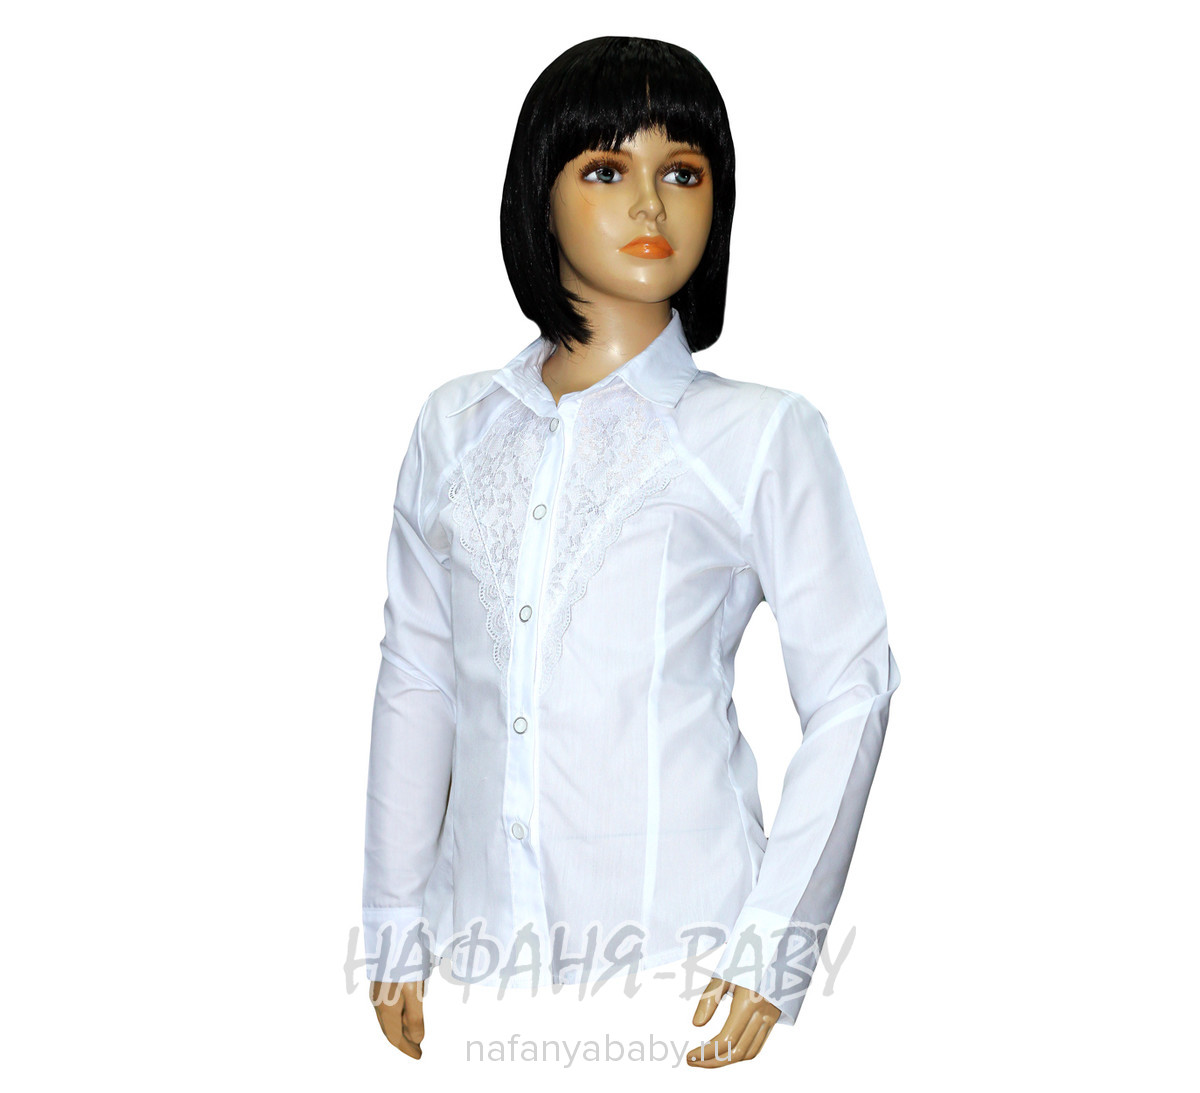 Детская блузка STAR KIDS, купить в интернет магазине Нафаня. арт: 115.